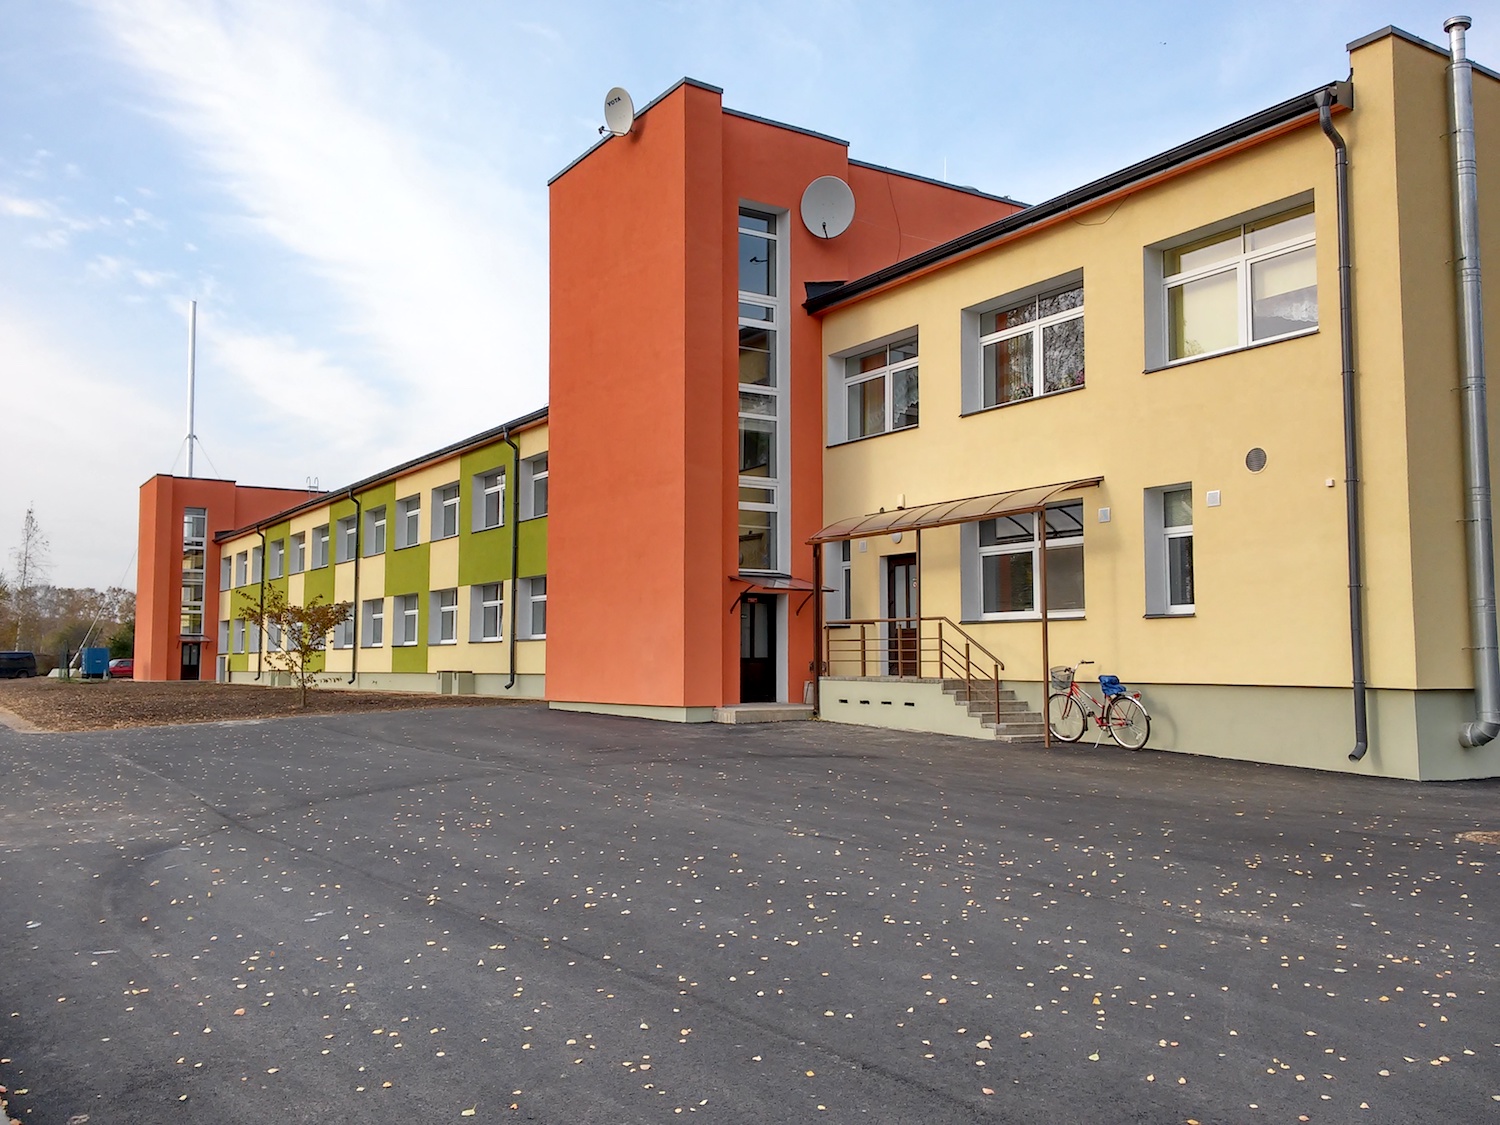 Višķu sociālās aprūpes centra atjaunošana, Daugavpils novada Višķu pagastā